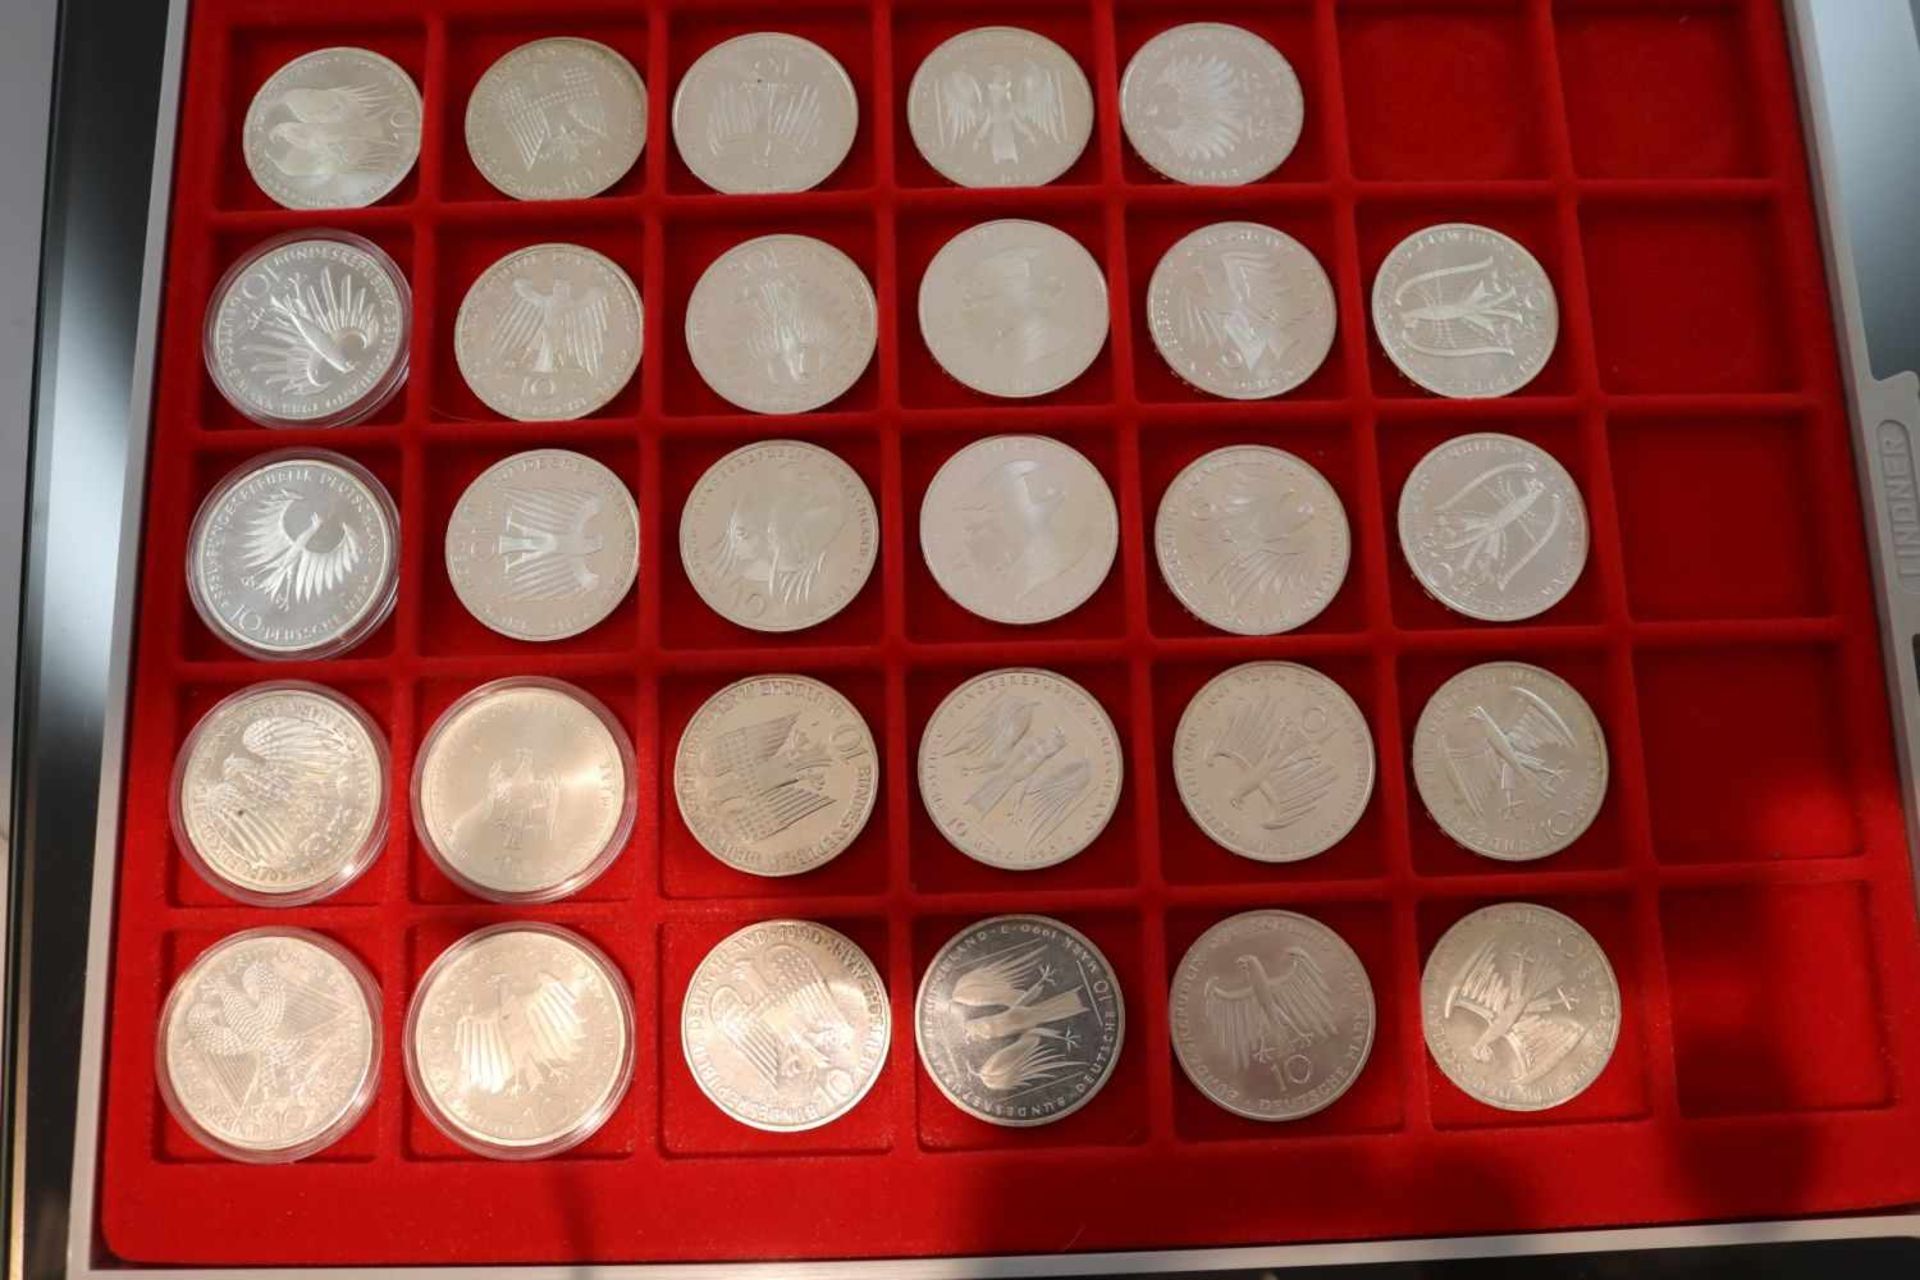 29 Münzen mit einem Nennwert von 10 Deutsche MarkMaterial: 625 SilberGewicht: 446,6 Gramm - - -25.00